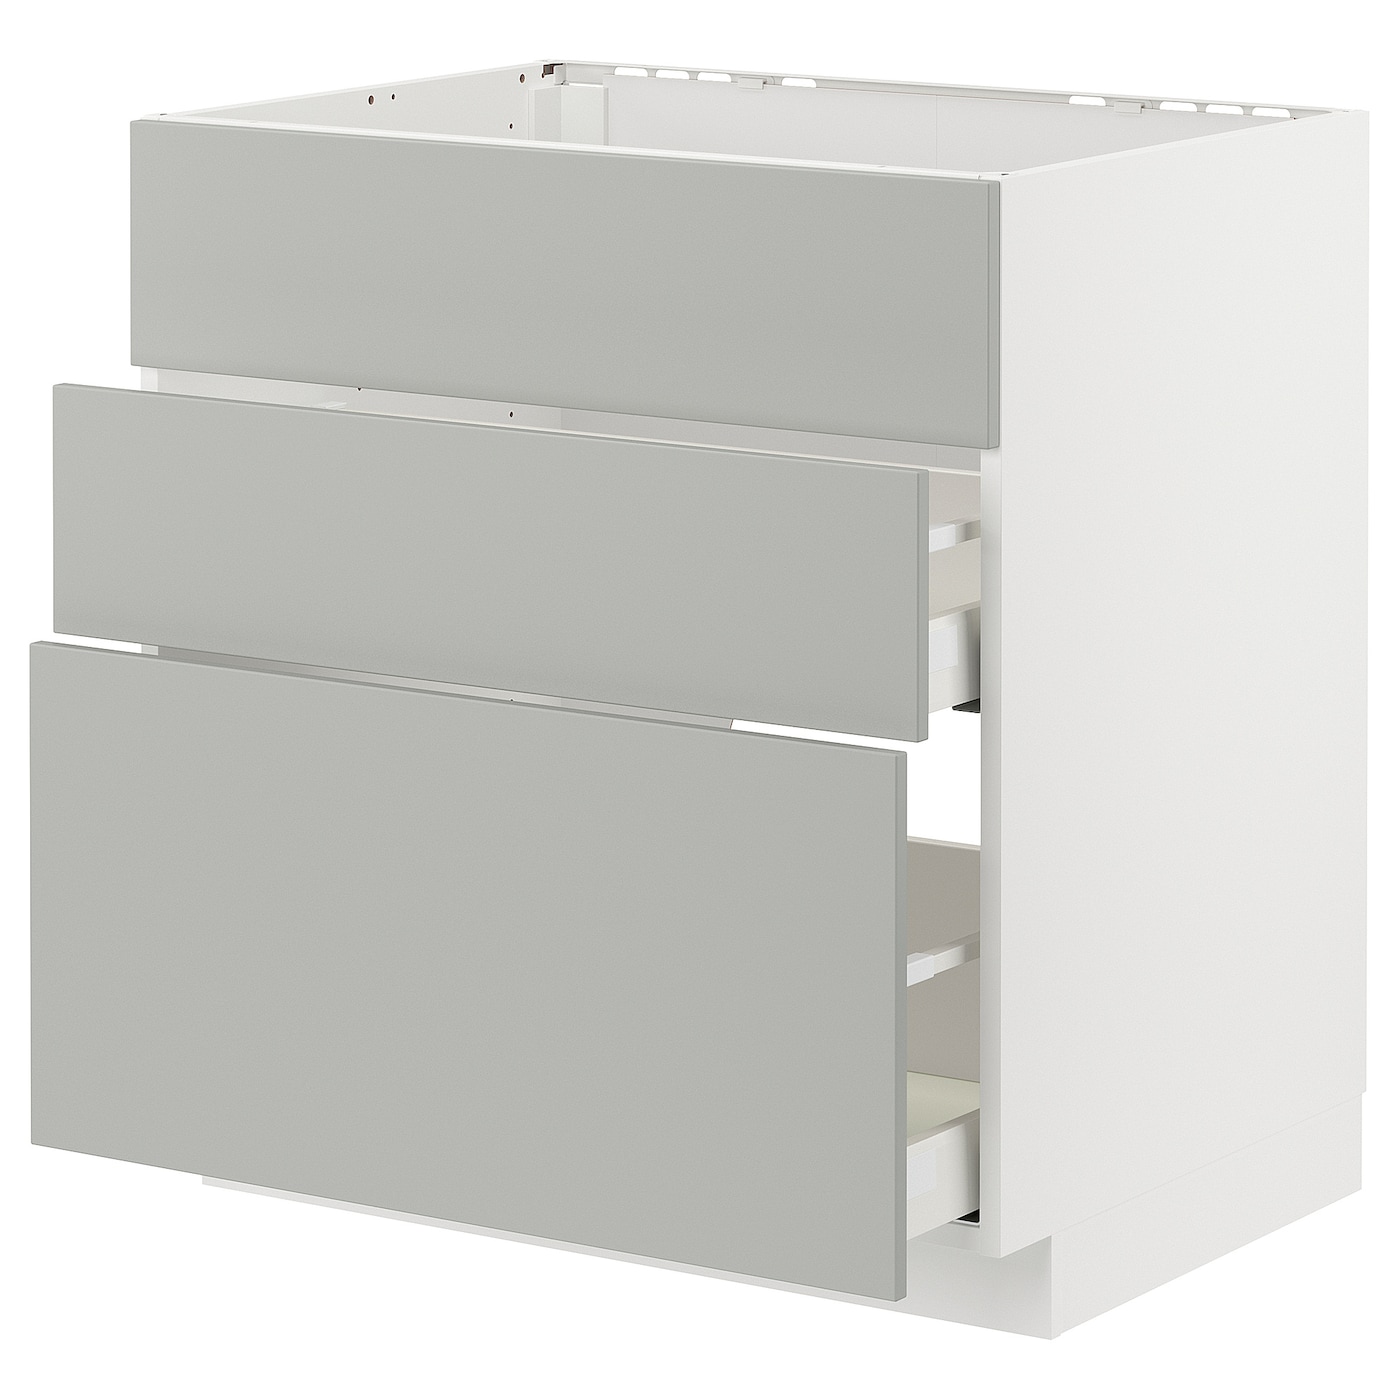 Напольный шкаф - METOD / MAXIMERA IKEA/ МЕТОД/ МАКСИМЕРА ИКЕА,  80х80 см, белый/светло-серый